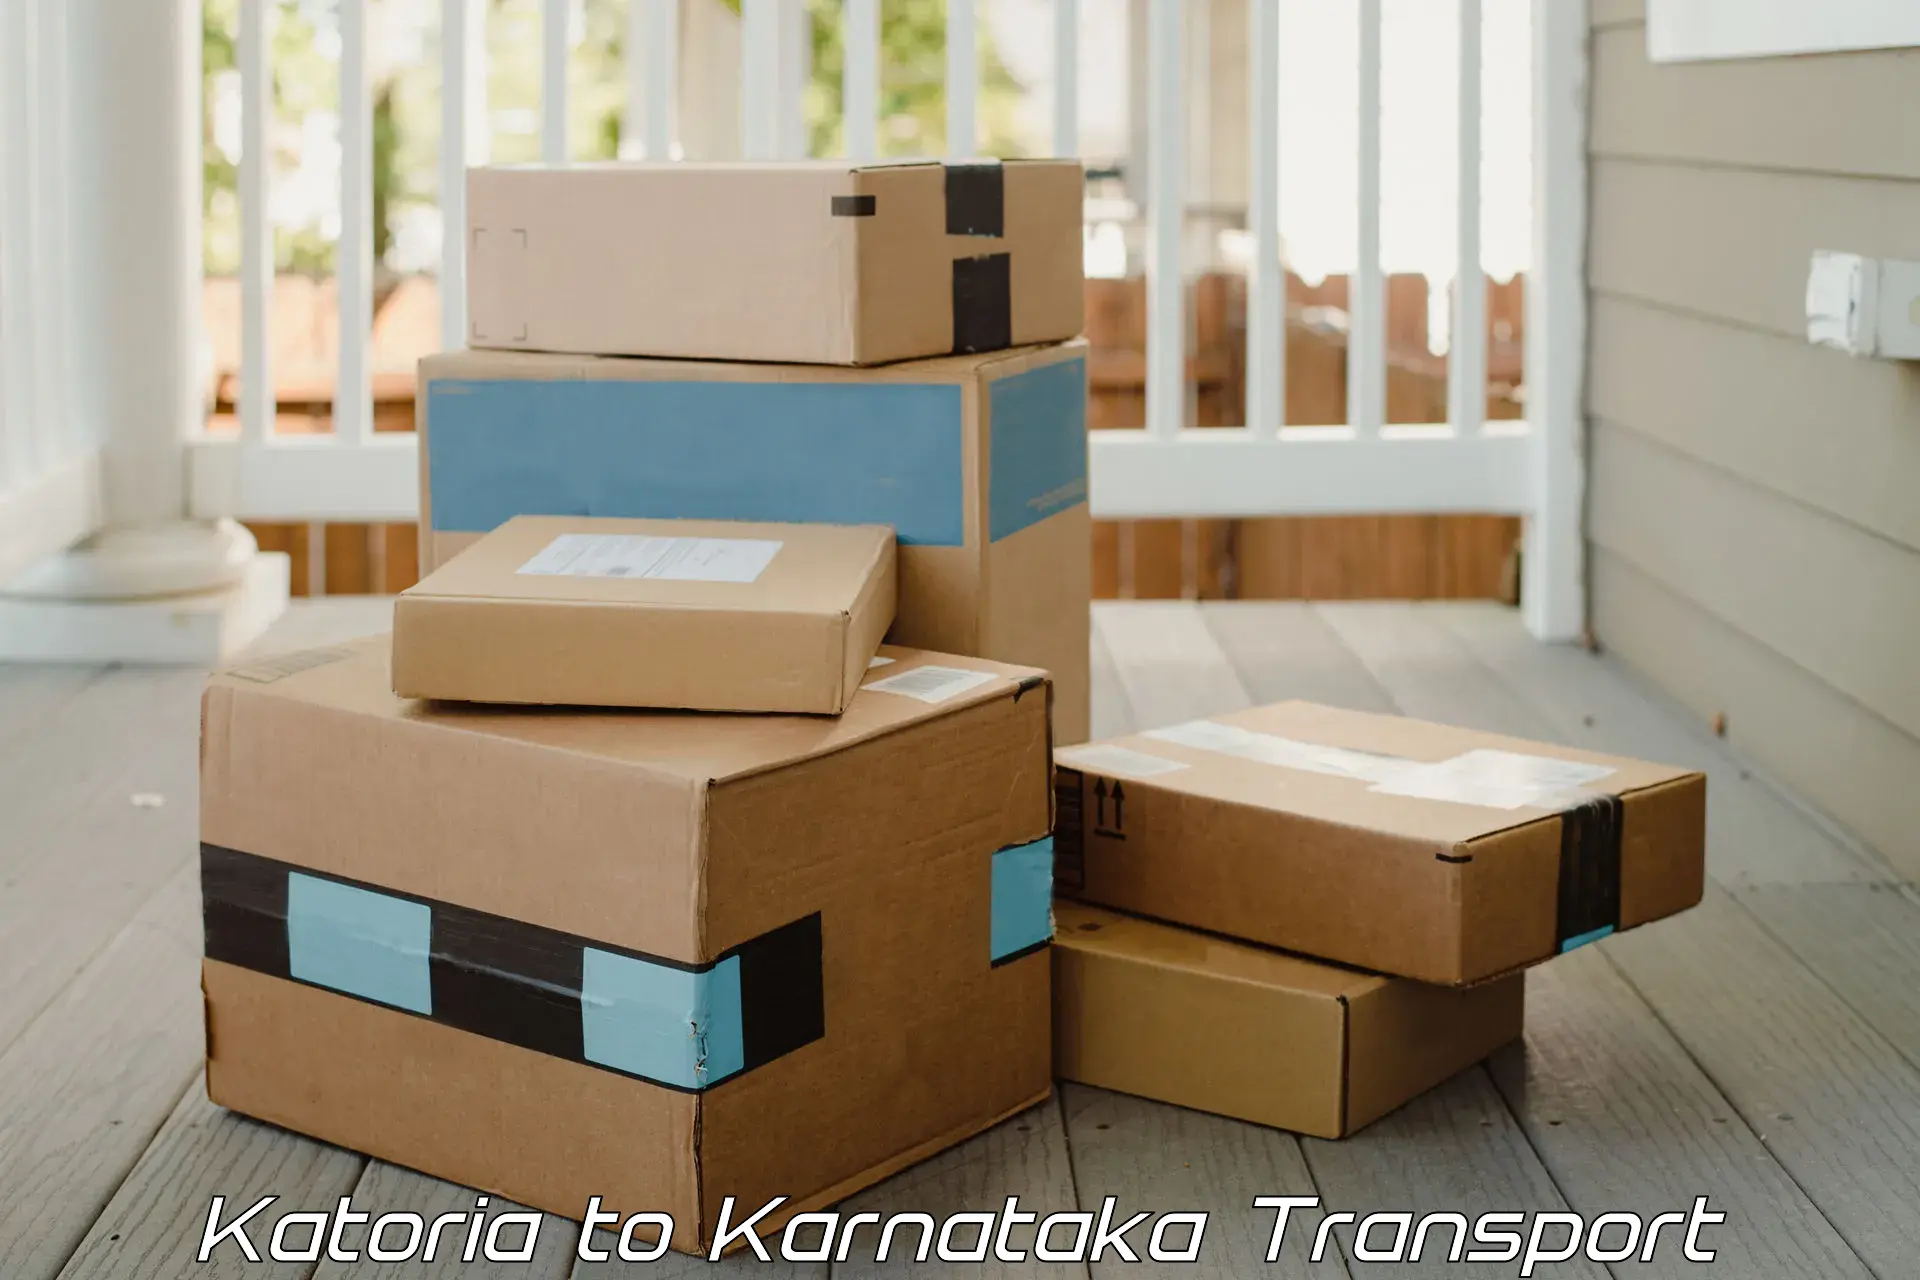 Container transportation services Katoria to Saraswathipuram